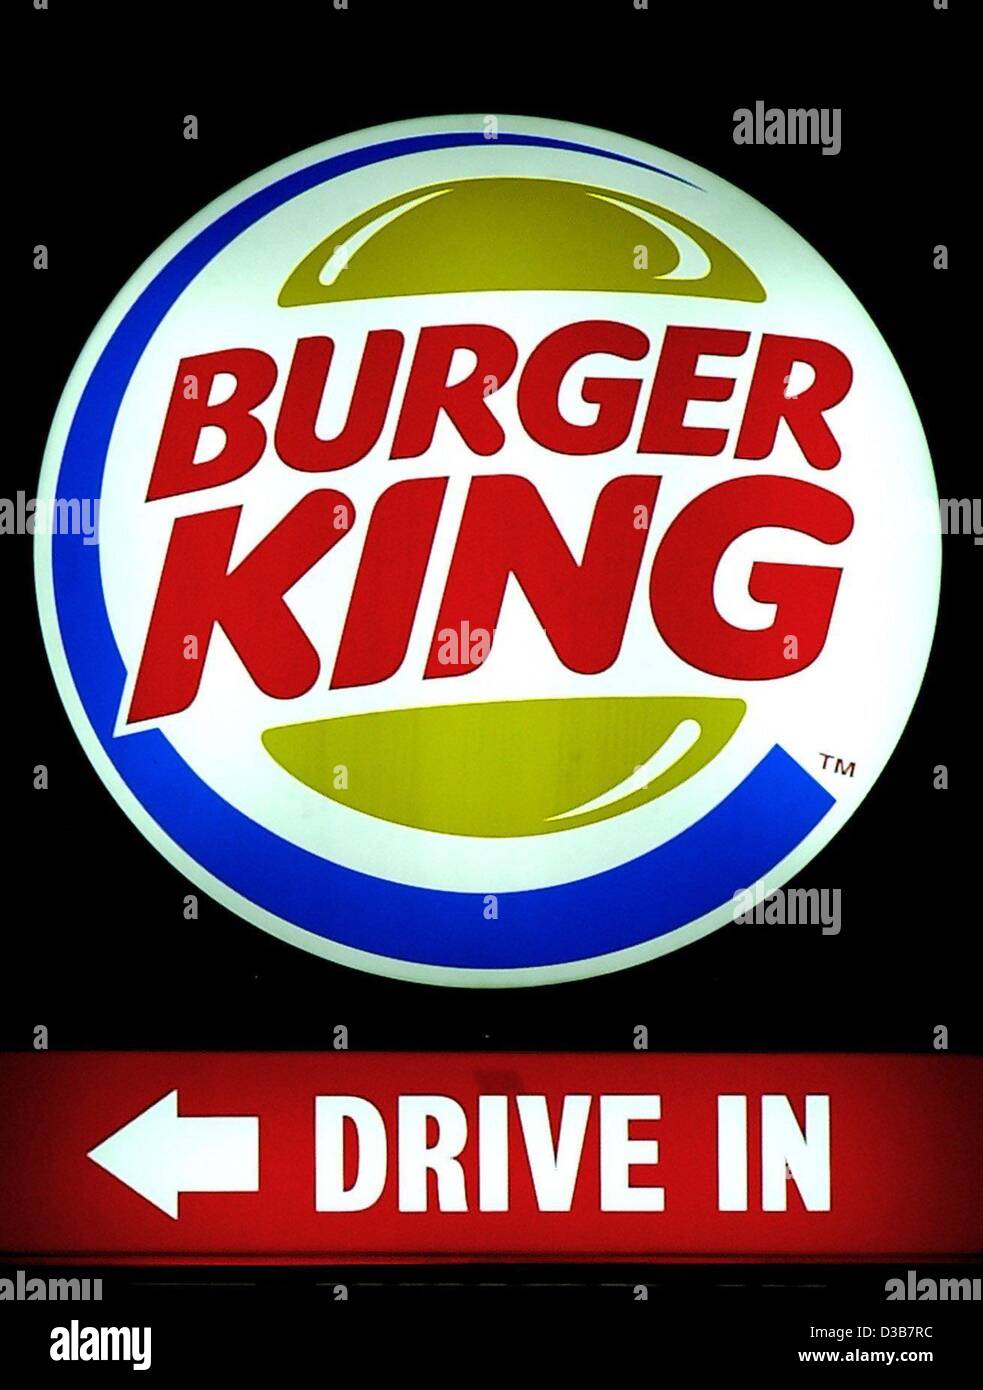 (Afp) - Le logo de la chaîne de restauration rapide Burger King, photographié à Fulda, Allemagne, 13 décembre 2002. La société boissons Britannique Diageo a vendu Burger King pour 1,5 milliards de dollars à un consortium américain. Le premier restaurant Burger King en Allemagne a été ouvert en 1976 à Berlin ; aujourd'hui, la chaîne a mor Banque D'Images